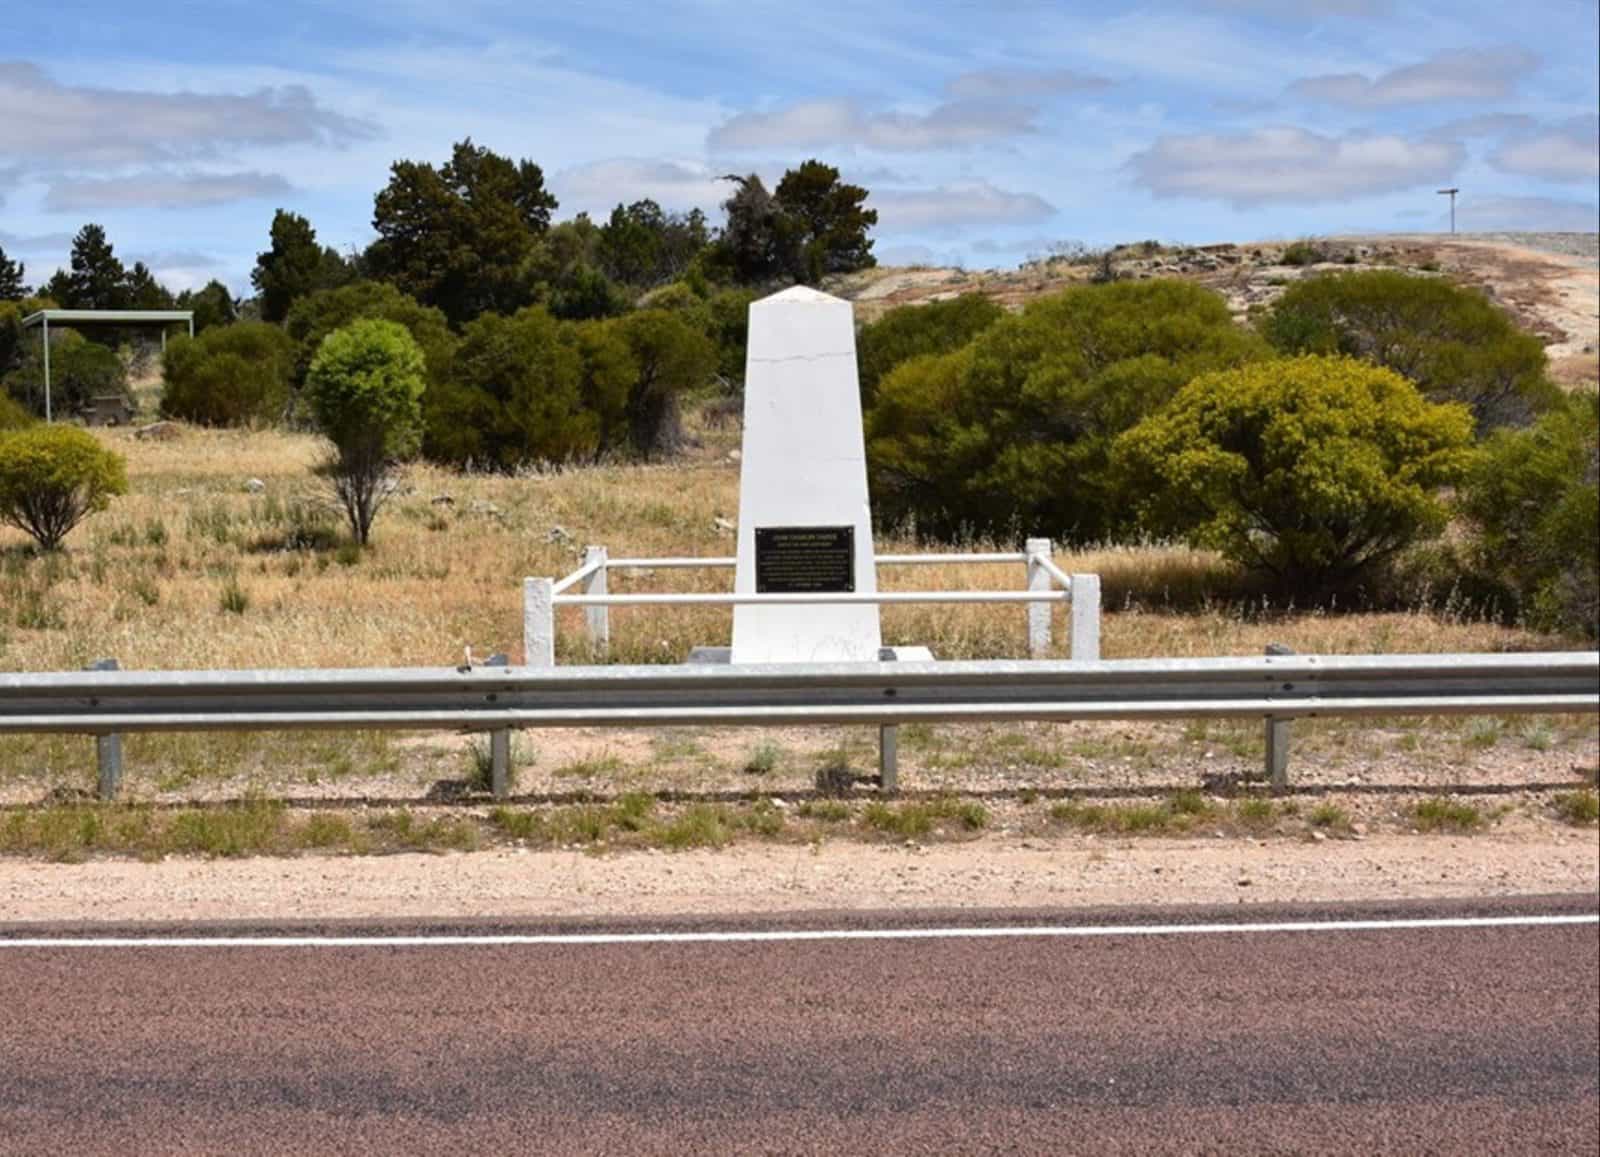 Darke's Monument